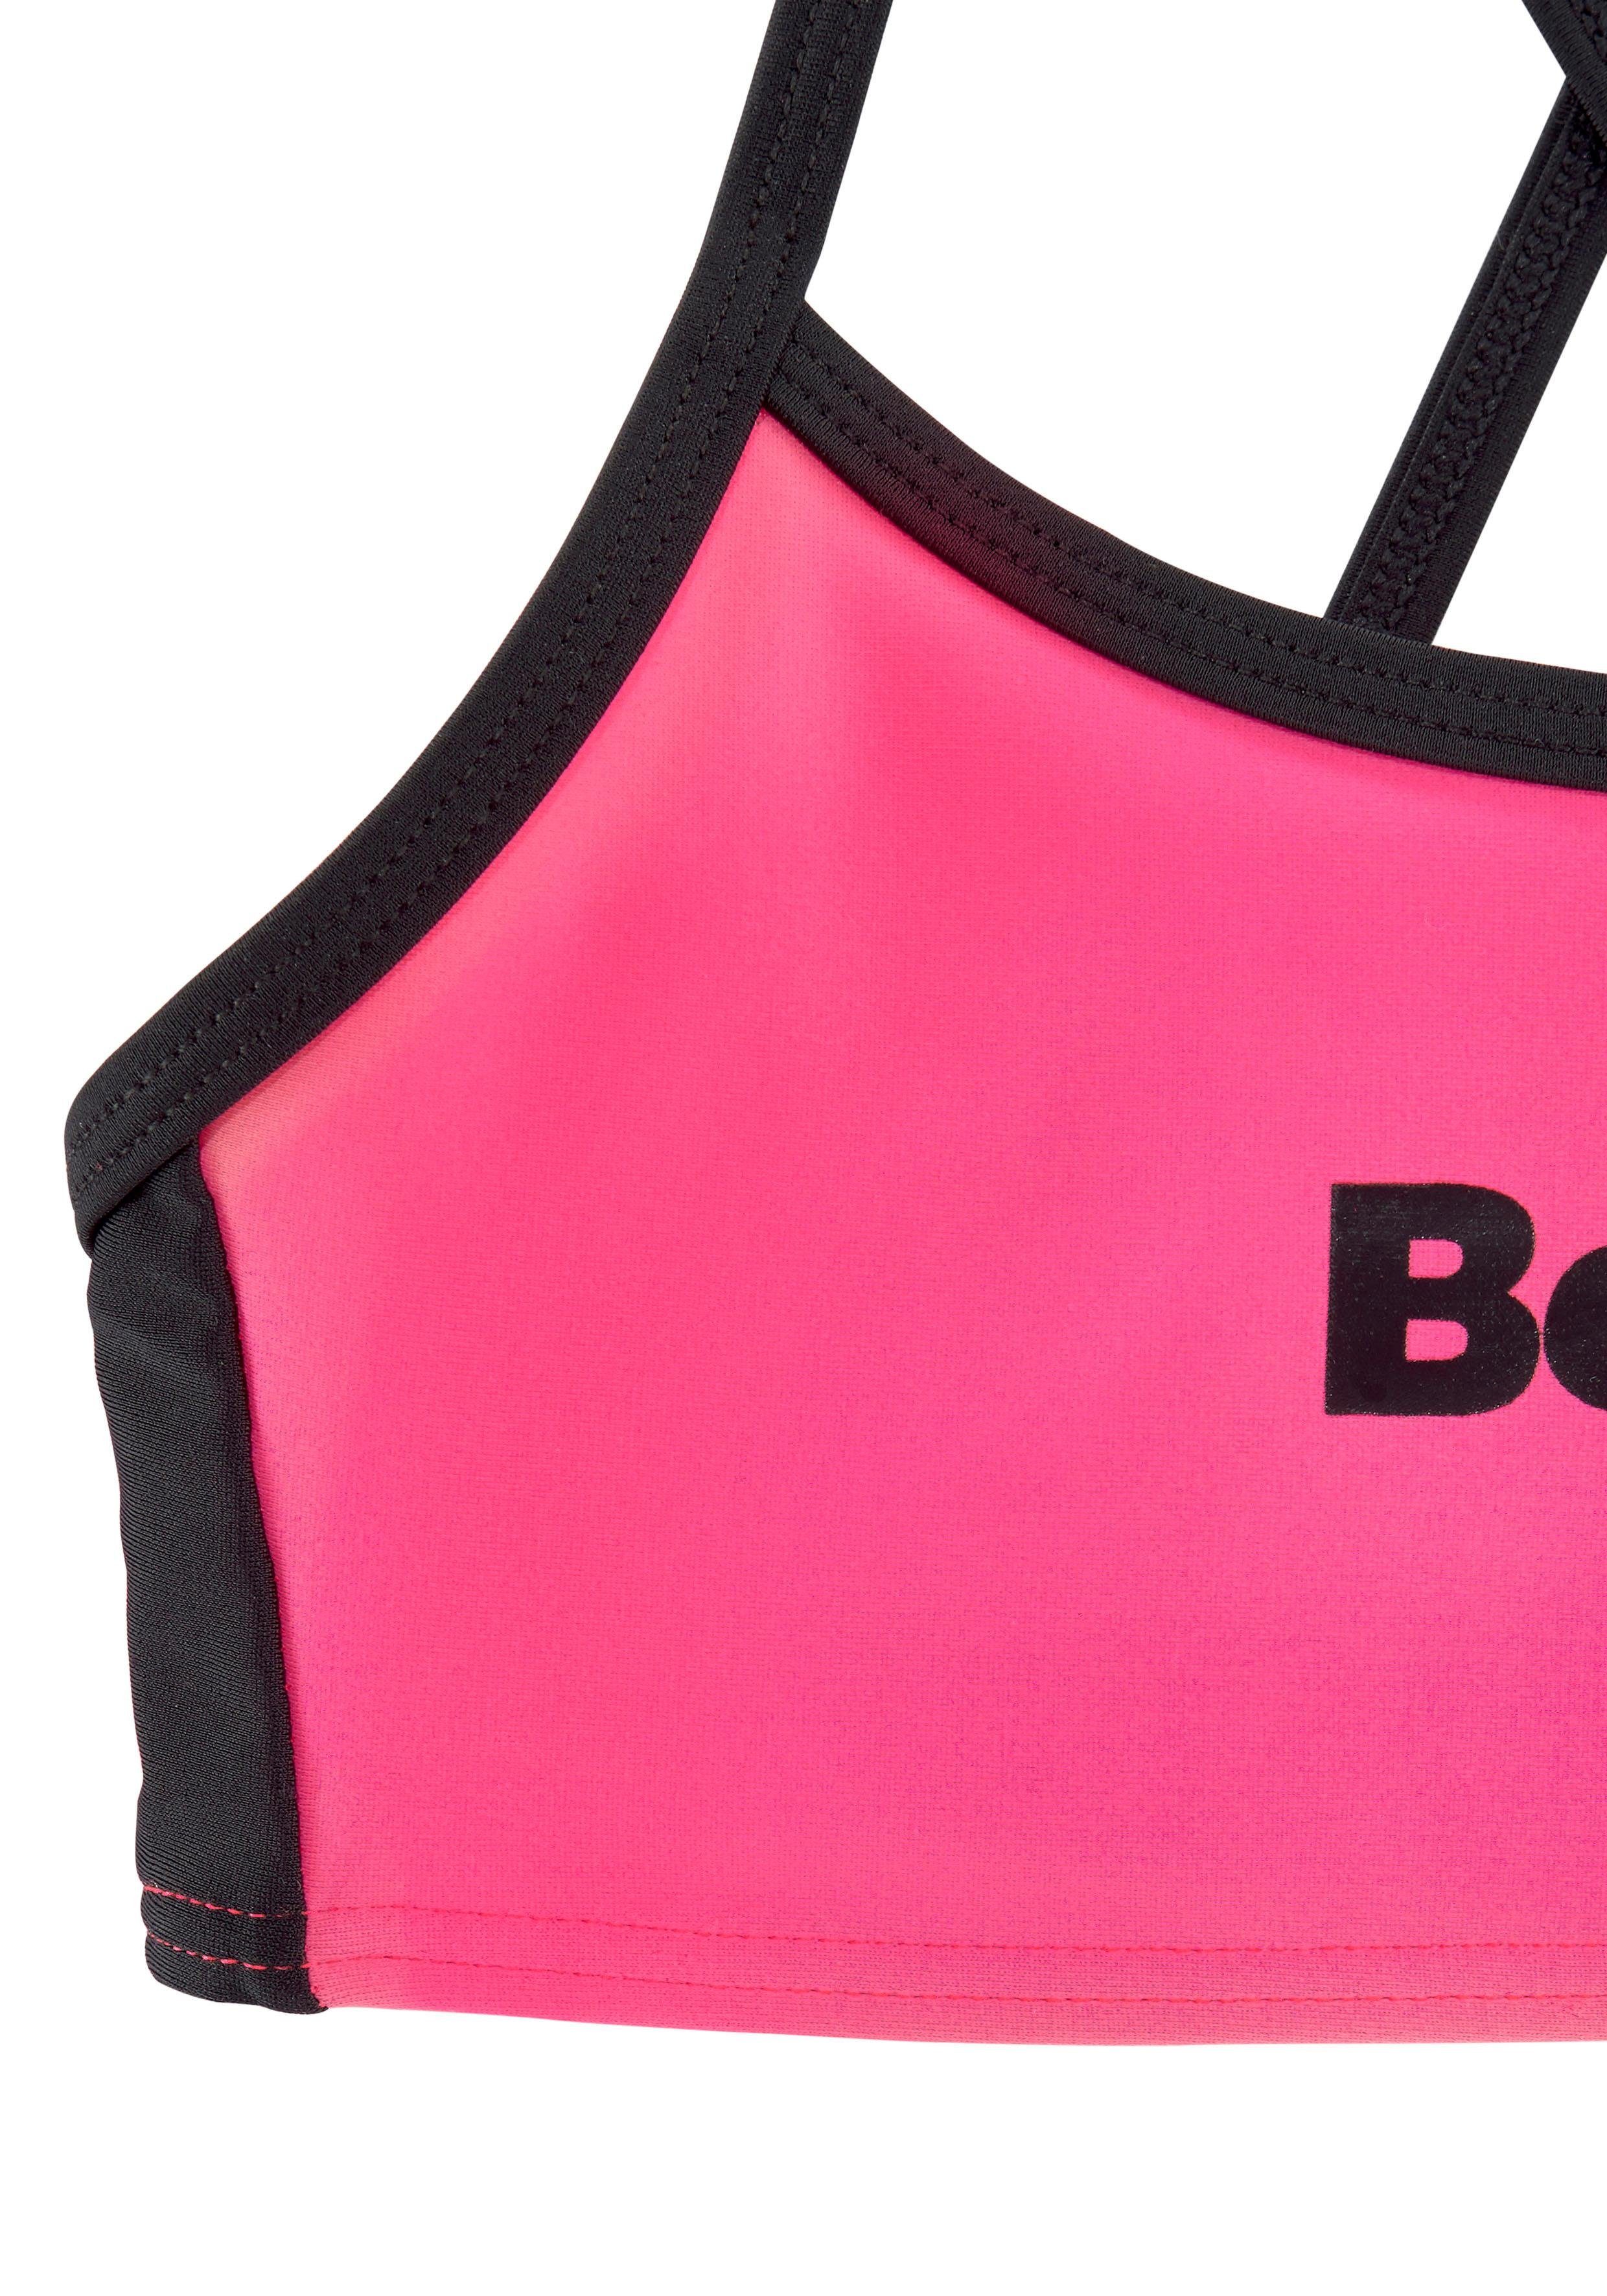 Bustier-Bikini gekreuzten Trägern Bench. mit pink-schwarz